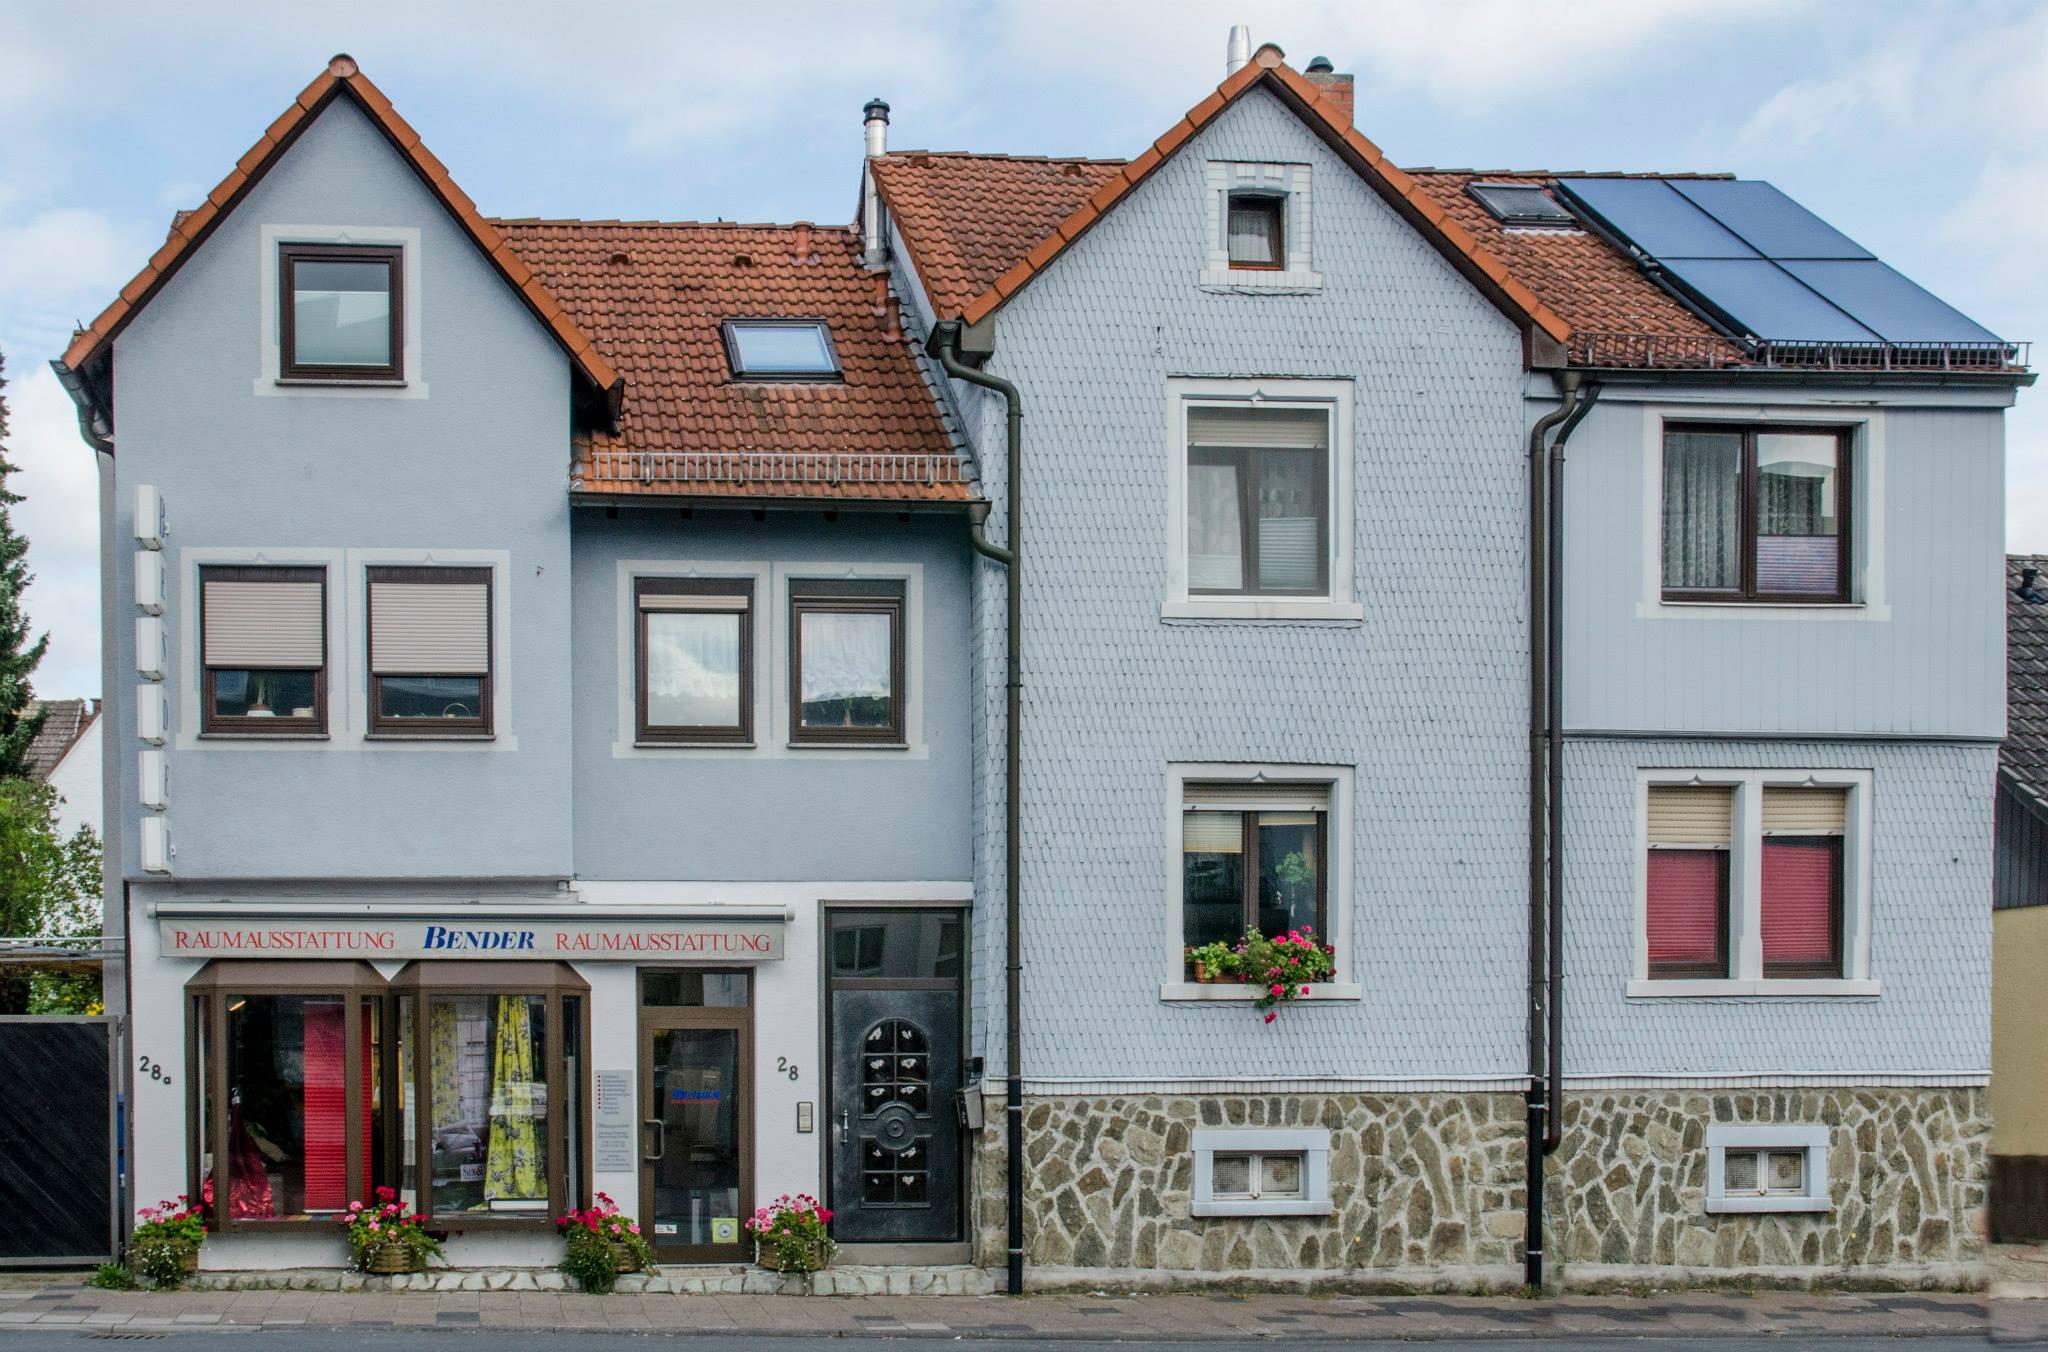 Bender Raumausstattung Oberursel Stierstadt #gardine #teppichboden ©J. Bender